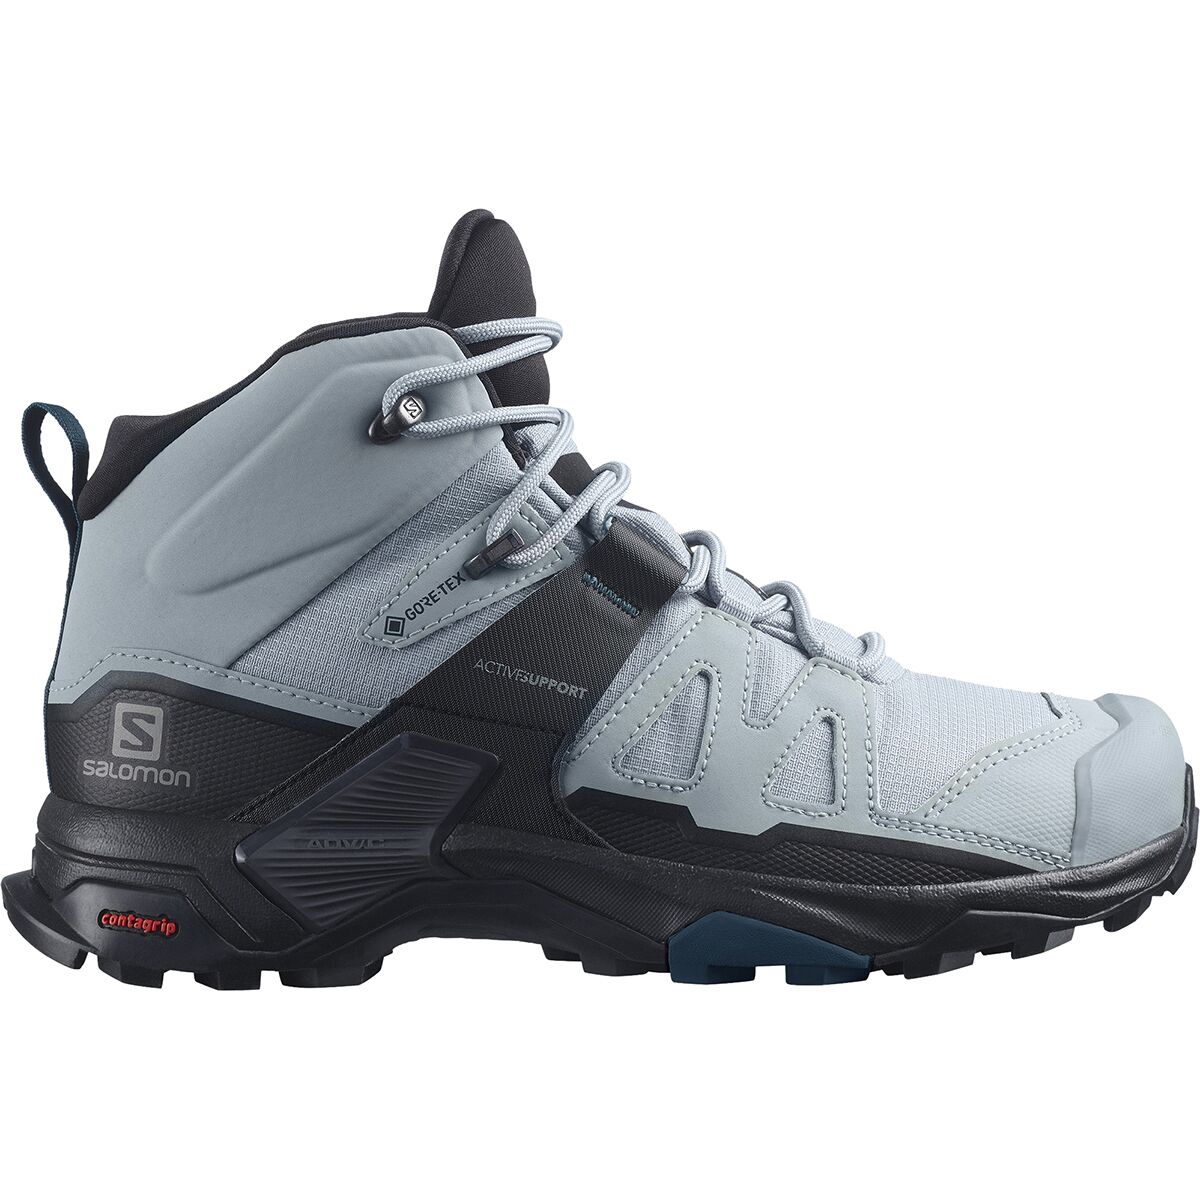 Salomon X Ultra 4 Mid GTX Wide Hiking Boot - Women's - Footwear